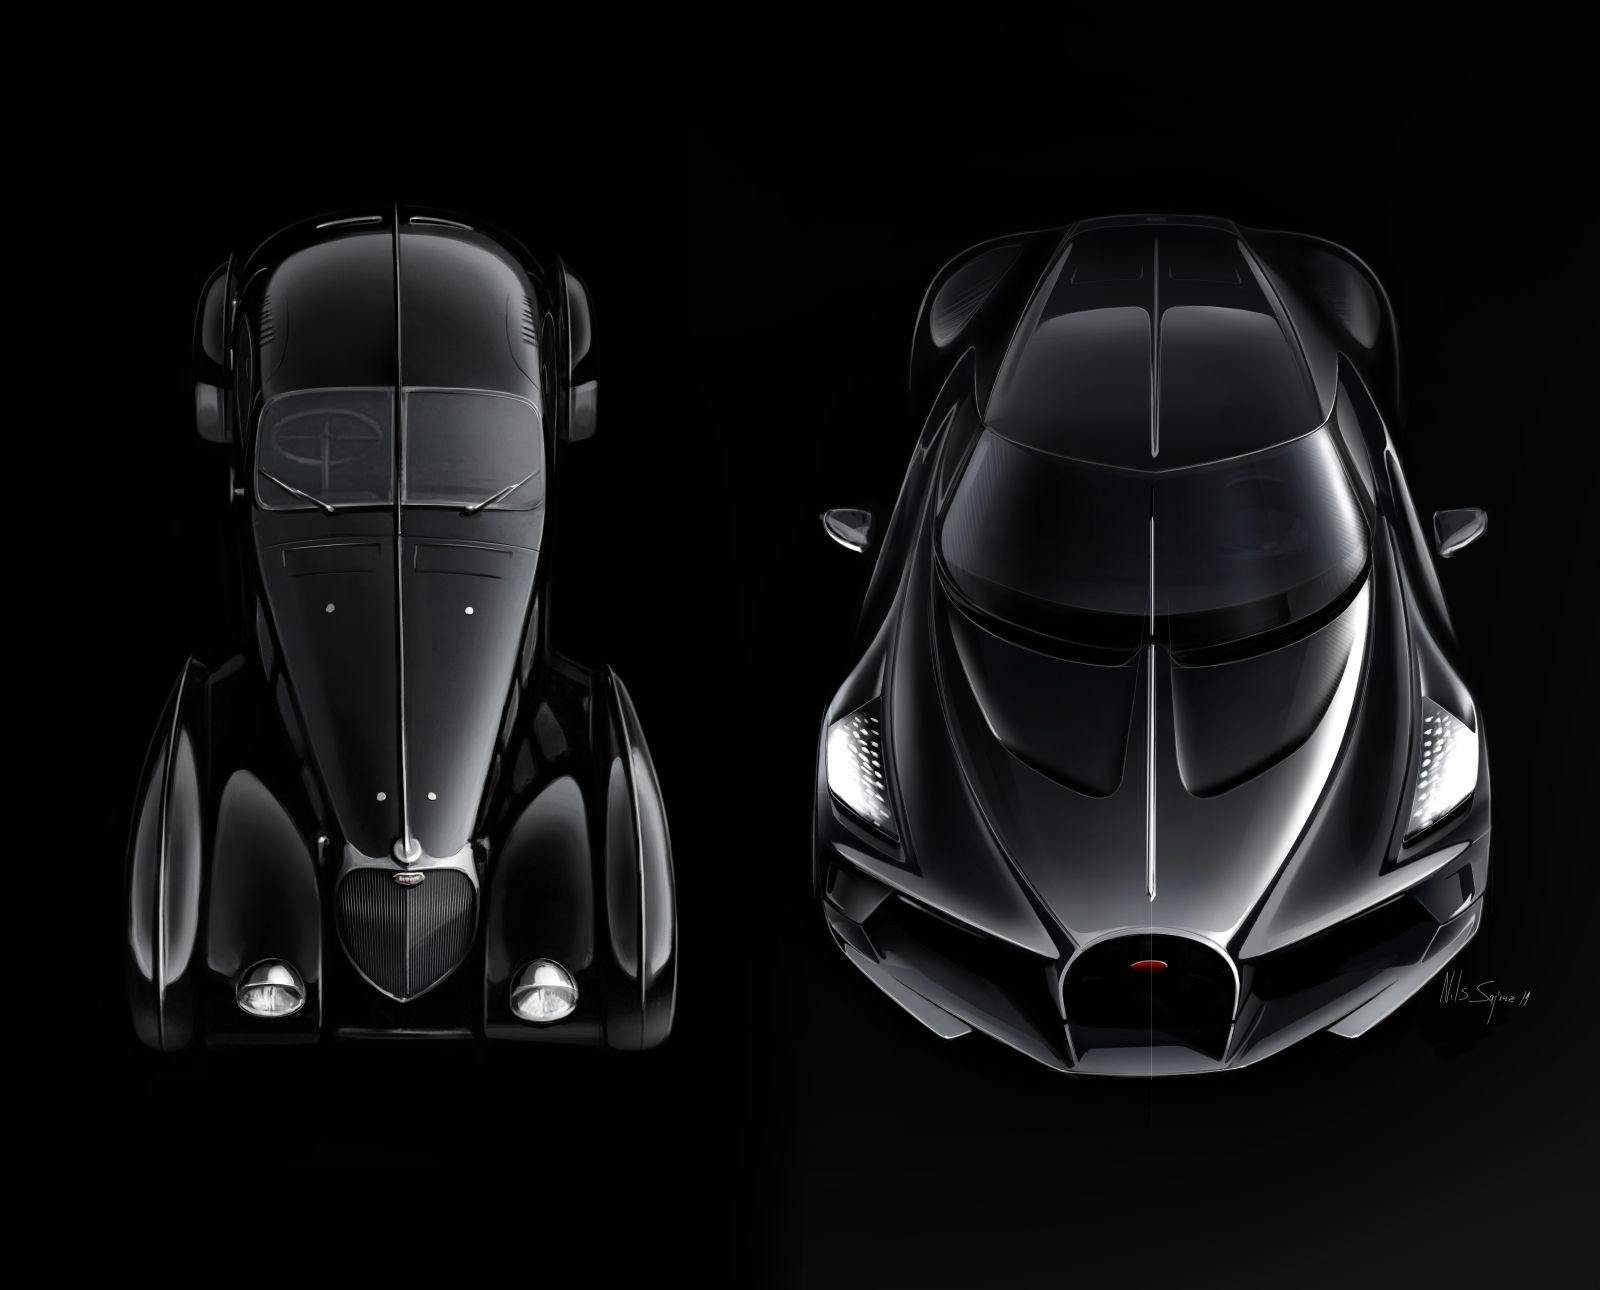 Design sketch Bugatti Type 57SC Atlantic and La Voiture Noire elevated top view - Nils Sajonz, Bugatti Design.